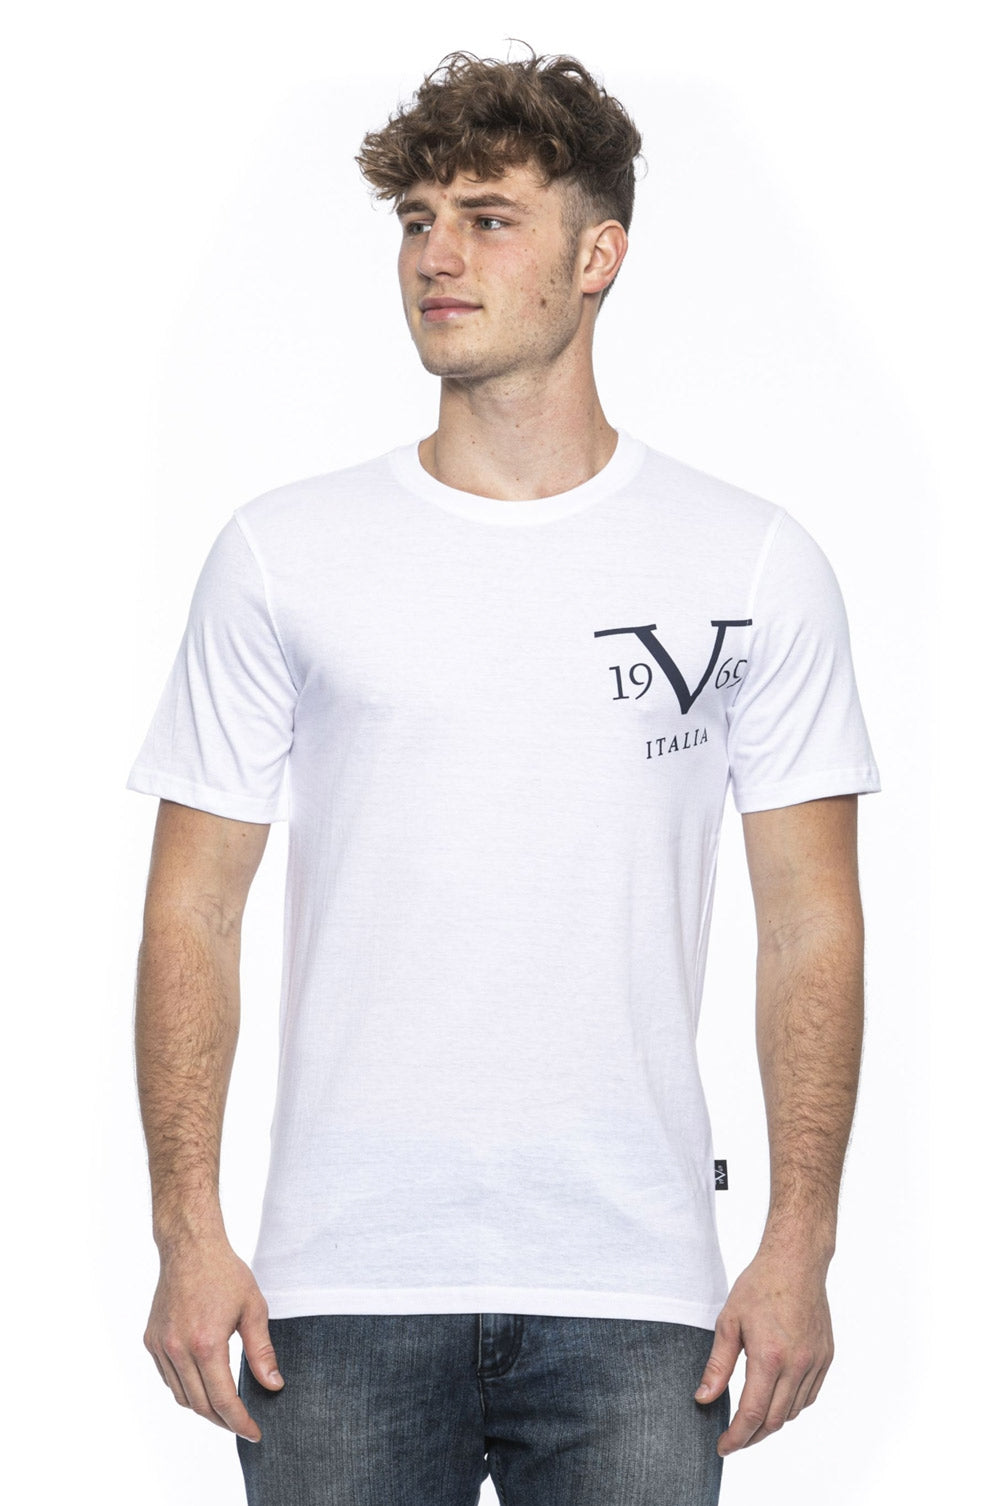 19V69 Italia Mens T-Shirt White MIKE WHITE – 19v69 Italia